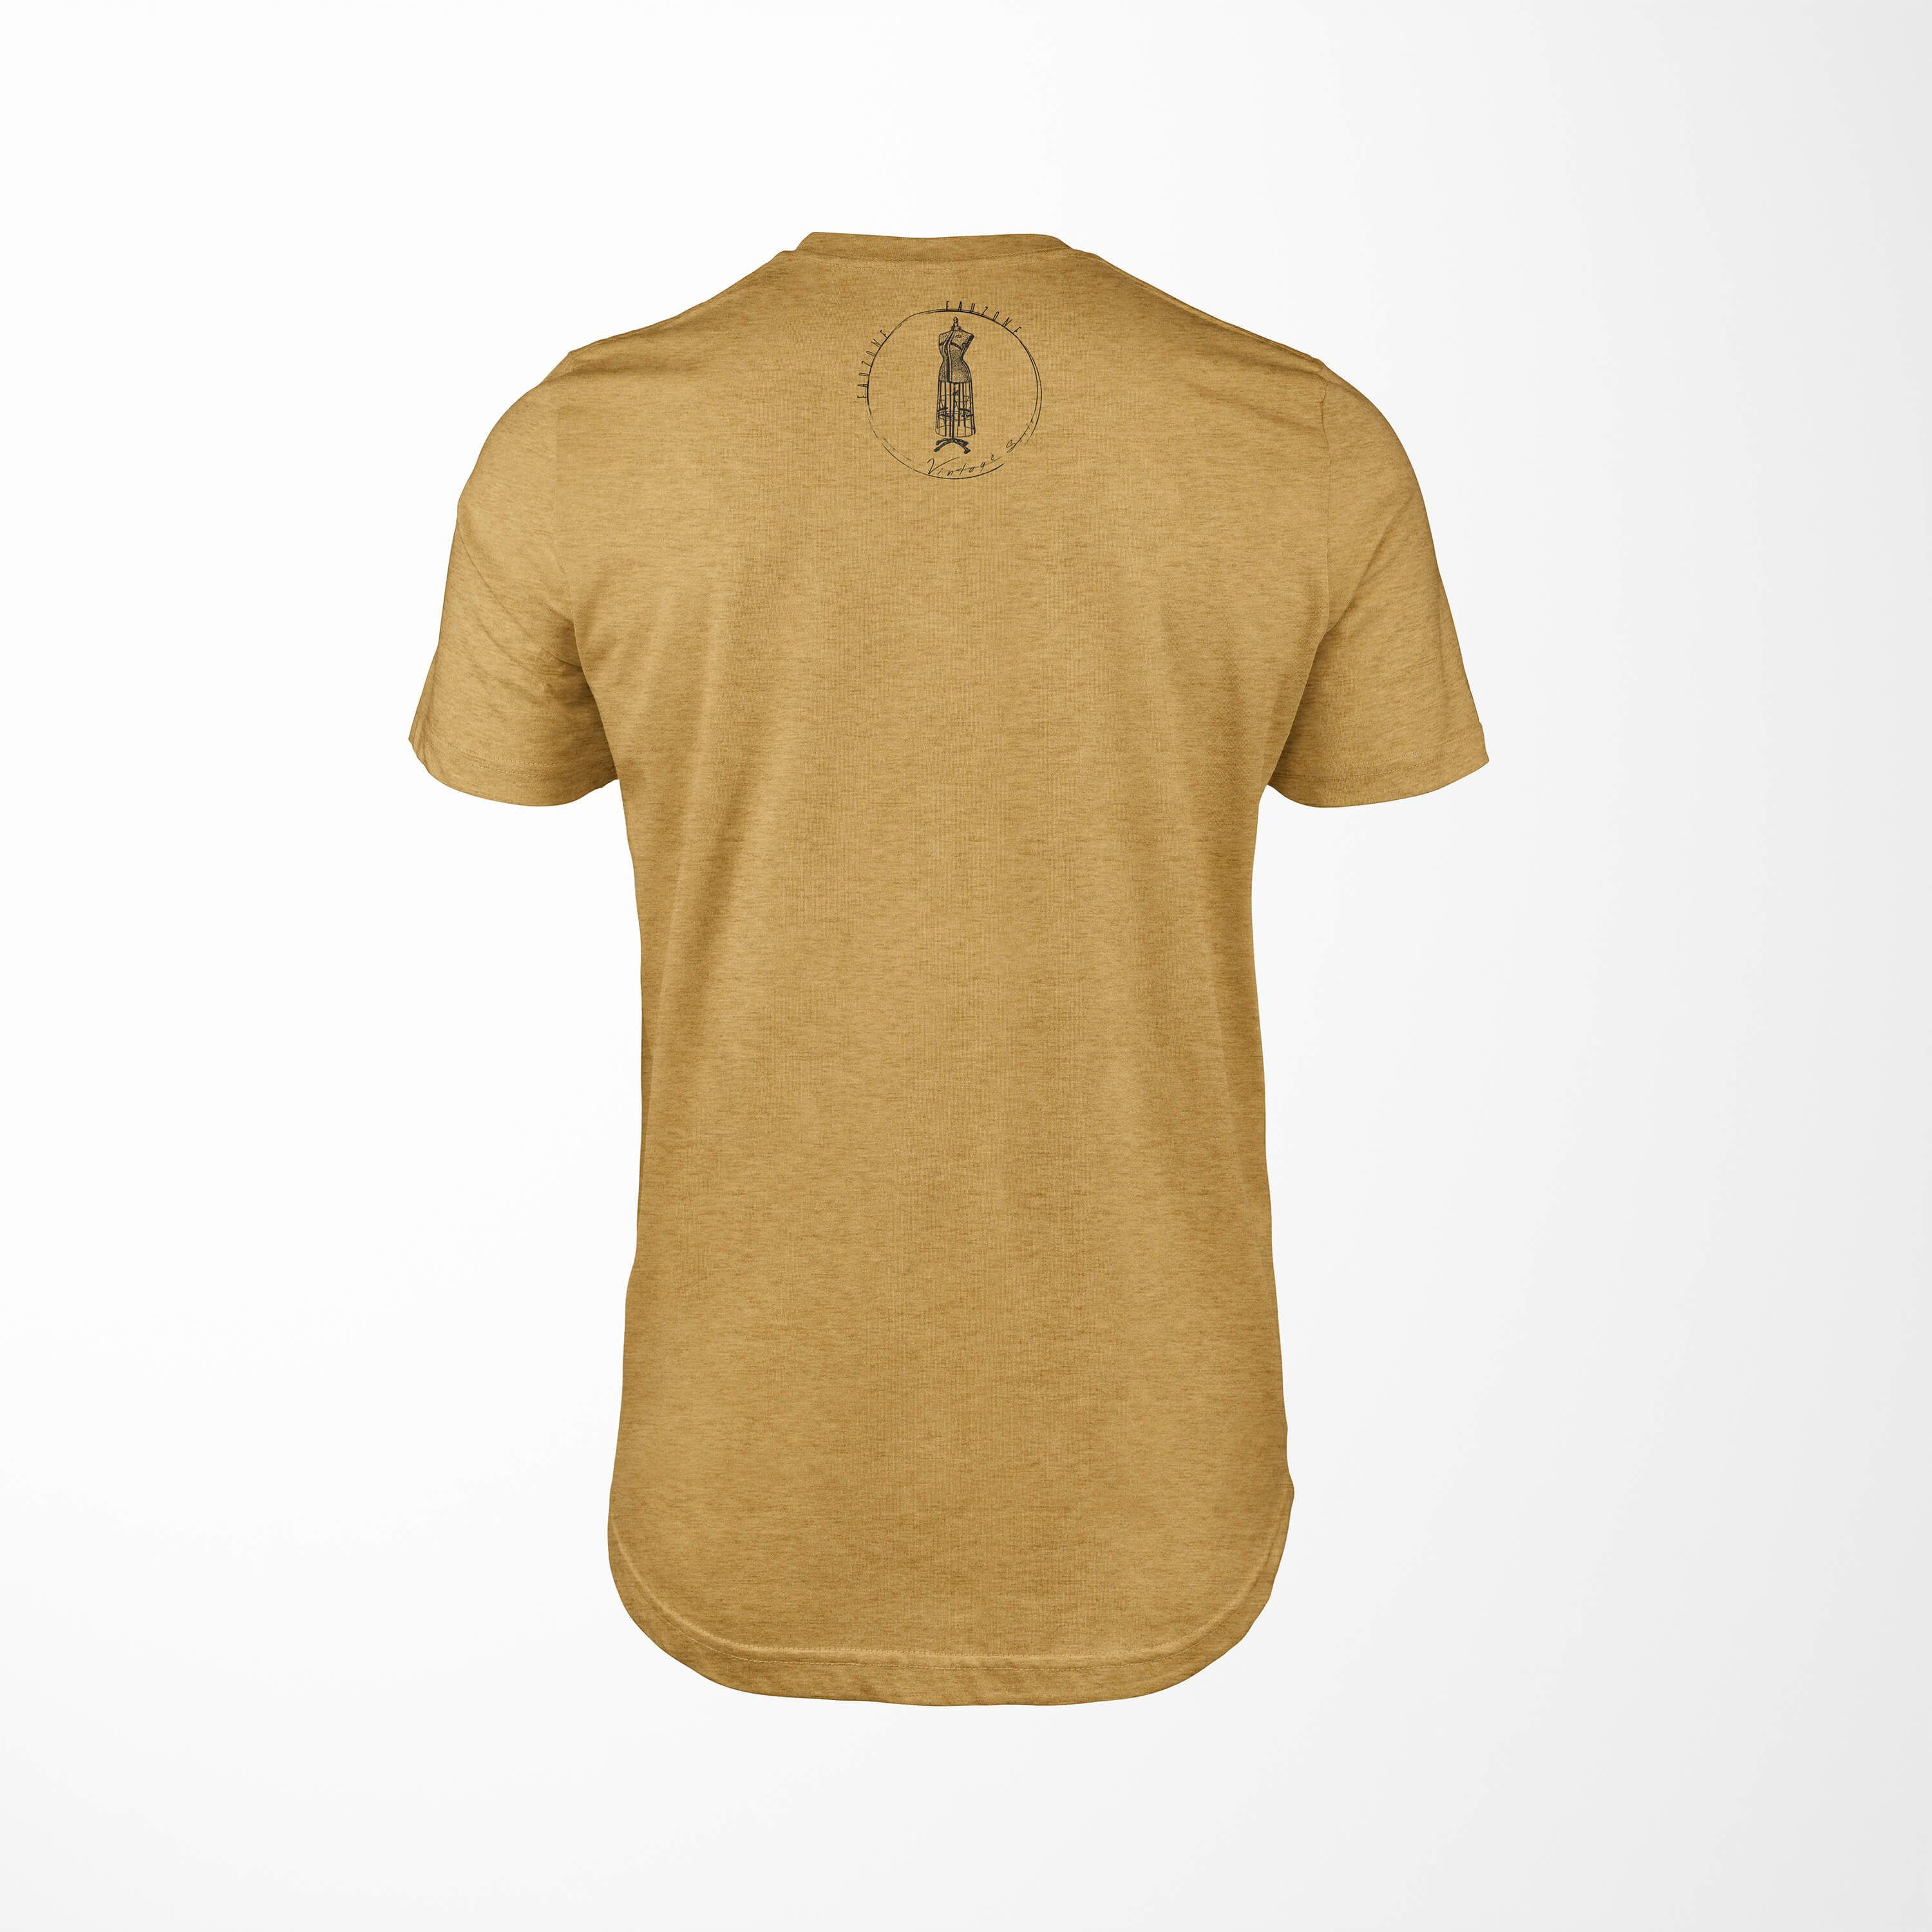 Sinus Art Herren T-Shirt T-Shirt Vintage Kleiderform Antique Gold